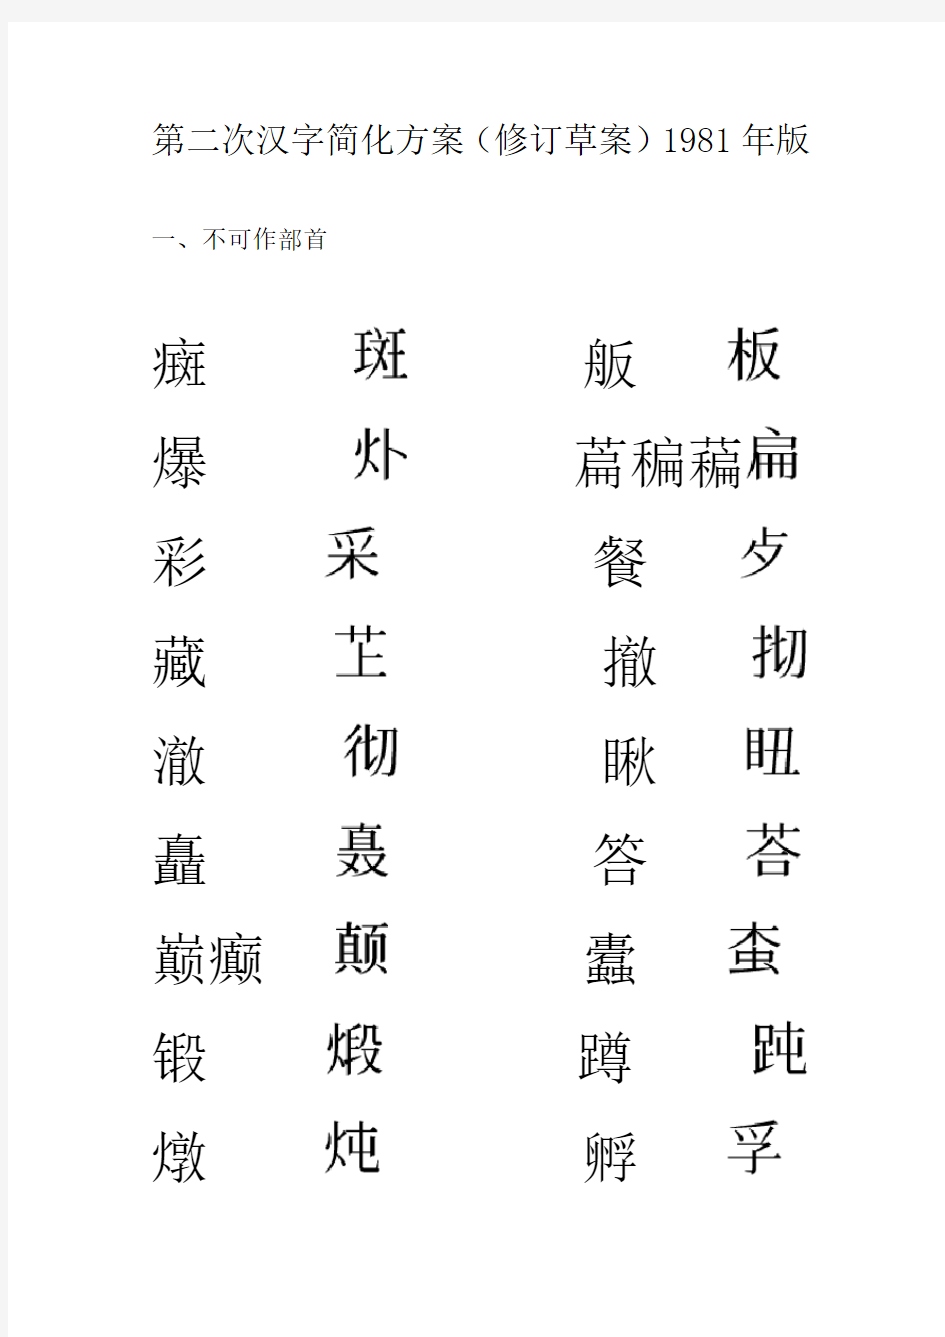 第二次汉字简化方案修订草案(1981年版)